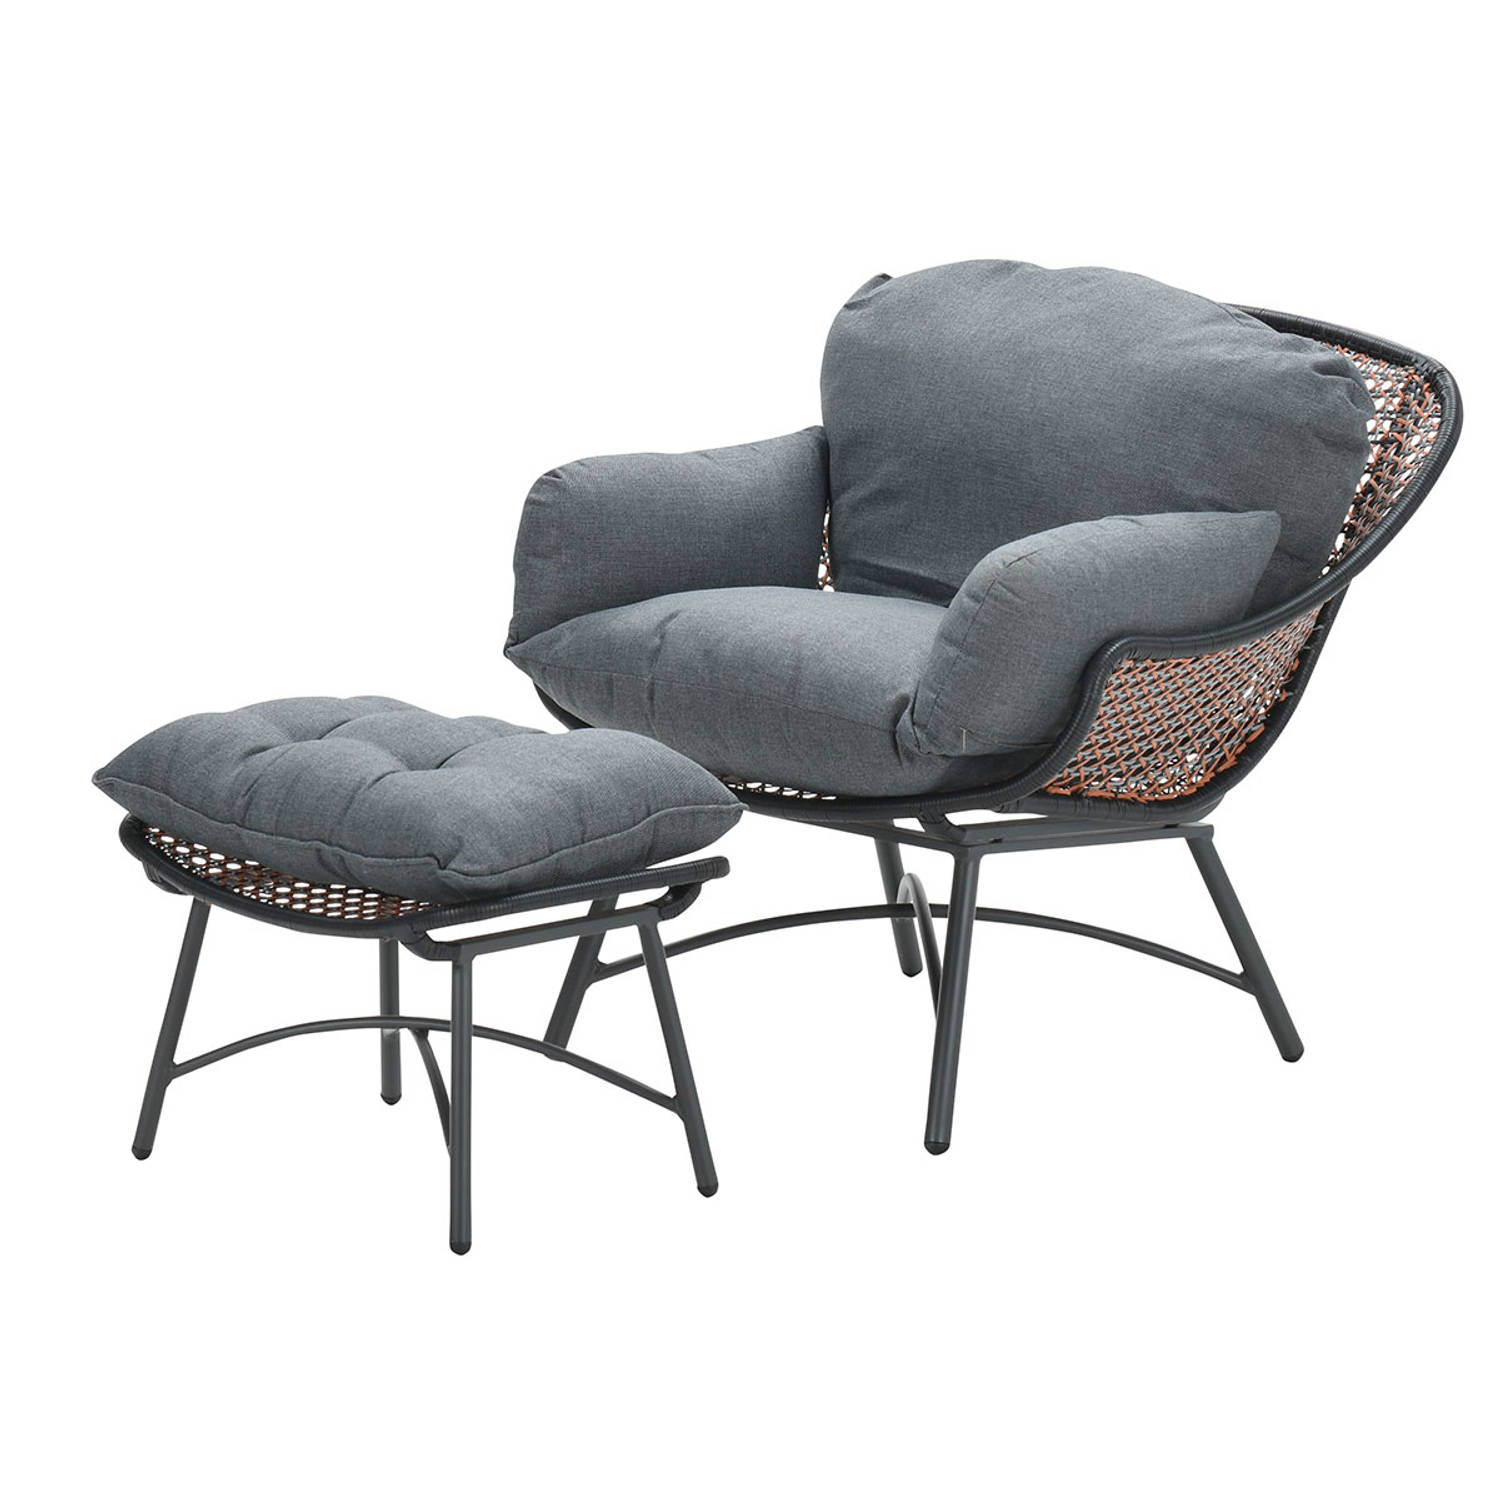 Logan fauteuil met voetenbank copper-black-mystic g